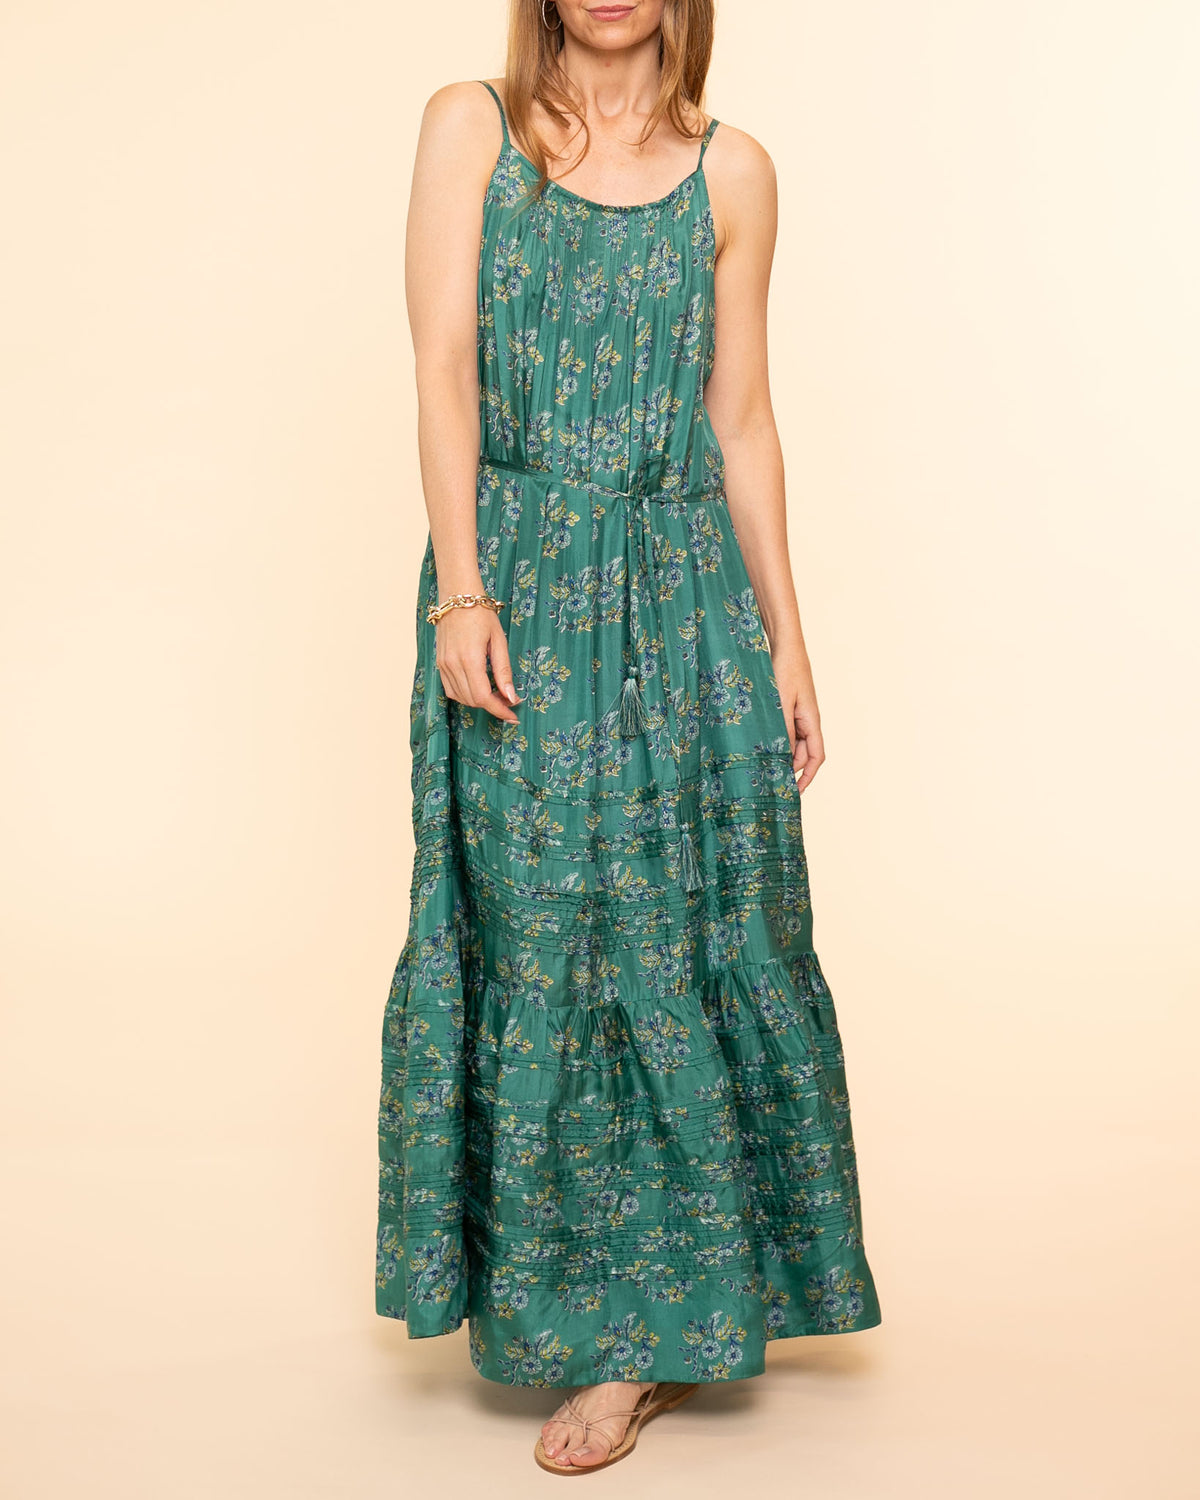 Soren Dress | Seagrass